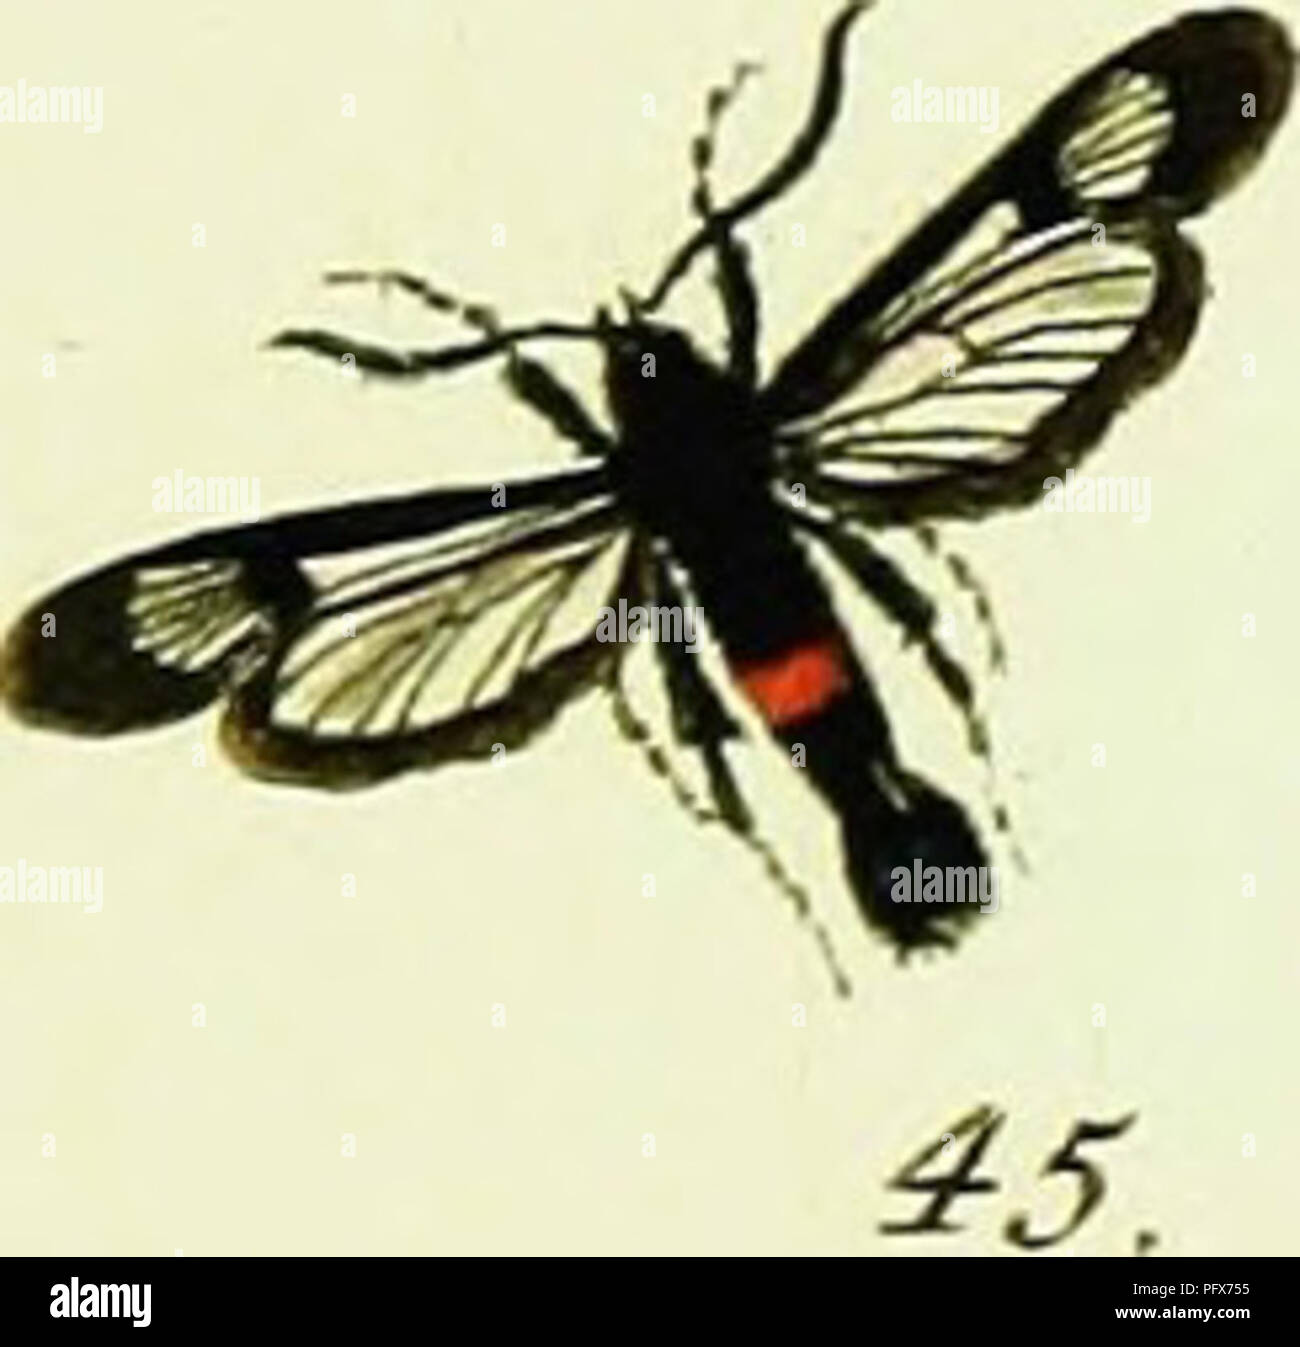 . Hu?bner's papilio [risorsa elettronica]. I lepidotteri. 46.. Si prega di notare che queste immagini vengono estratte dalla pagina sottoposta a scansione di immagini che possono essere state migliorate digitalmente per la leggibilità - Colorazione e aspetto di queste illustrazioni potrebbero non perfettamente assomigliano al lavoro originale. Hu?bner, Giacobbe, 1761-1826. [S. l. : S. n. ] Foto Stock